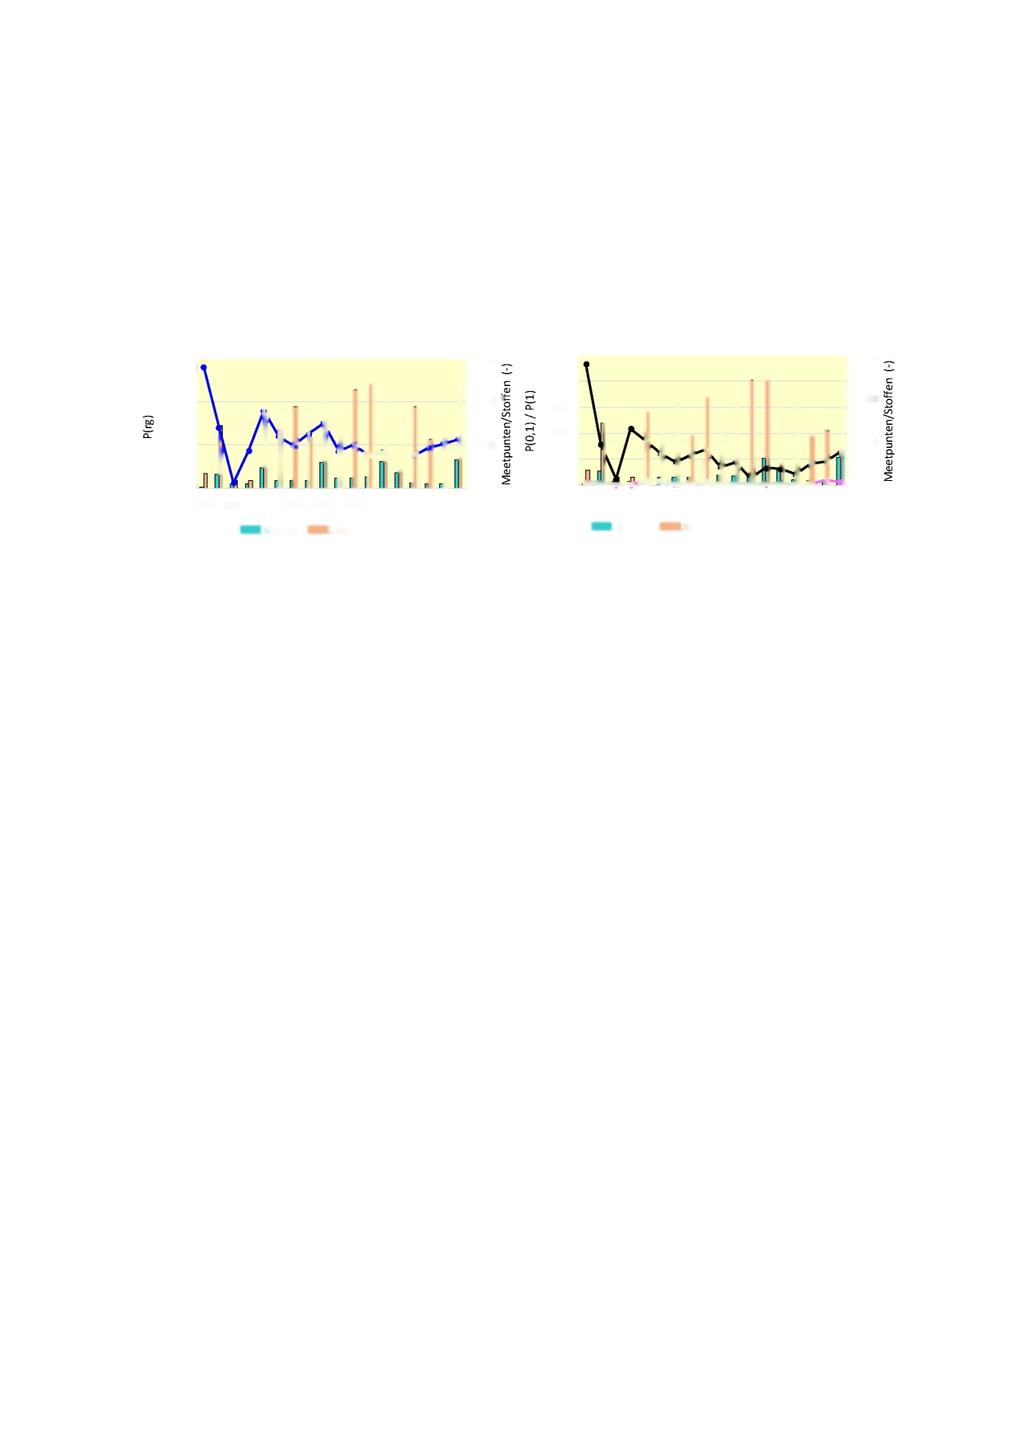 5.2 Ontwikkeling presentiegraad GBM in oppervlaktewater Figuur 5.2 toont het verloop van de drie soorten presentiegraad van GBM (zie Ş 3.4) in het oppervlaktewater van 1998 t/m 2016.